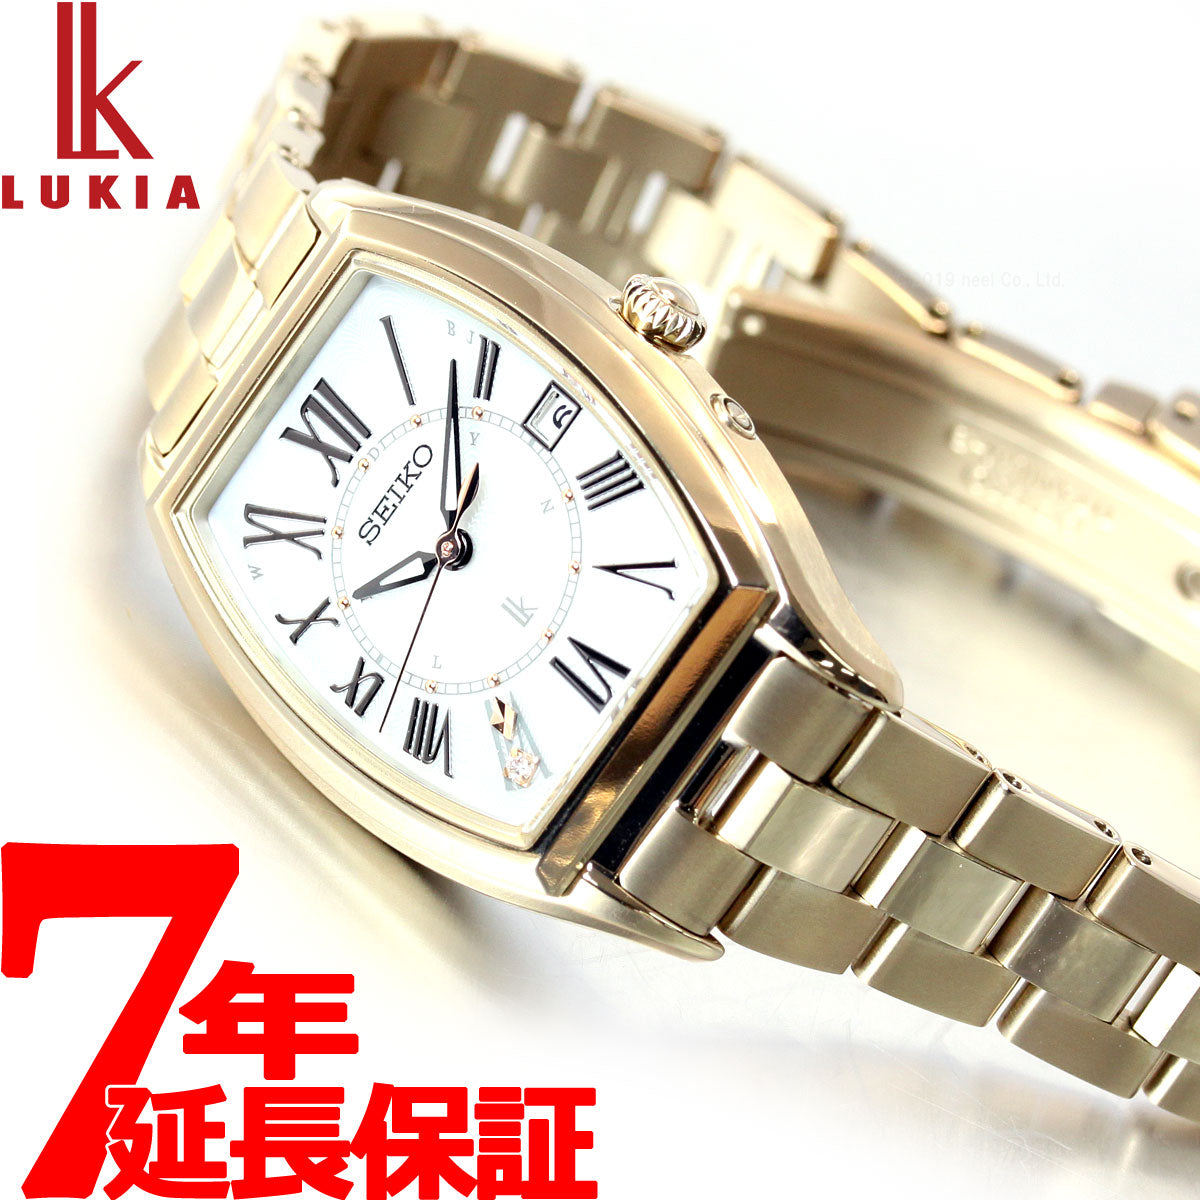 保証書付き SEIKO ルキア LUKIA レディース 腕時計 SSQW0468mm